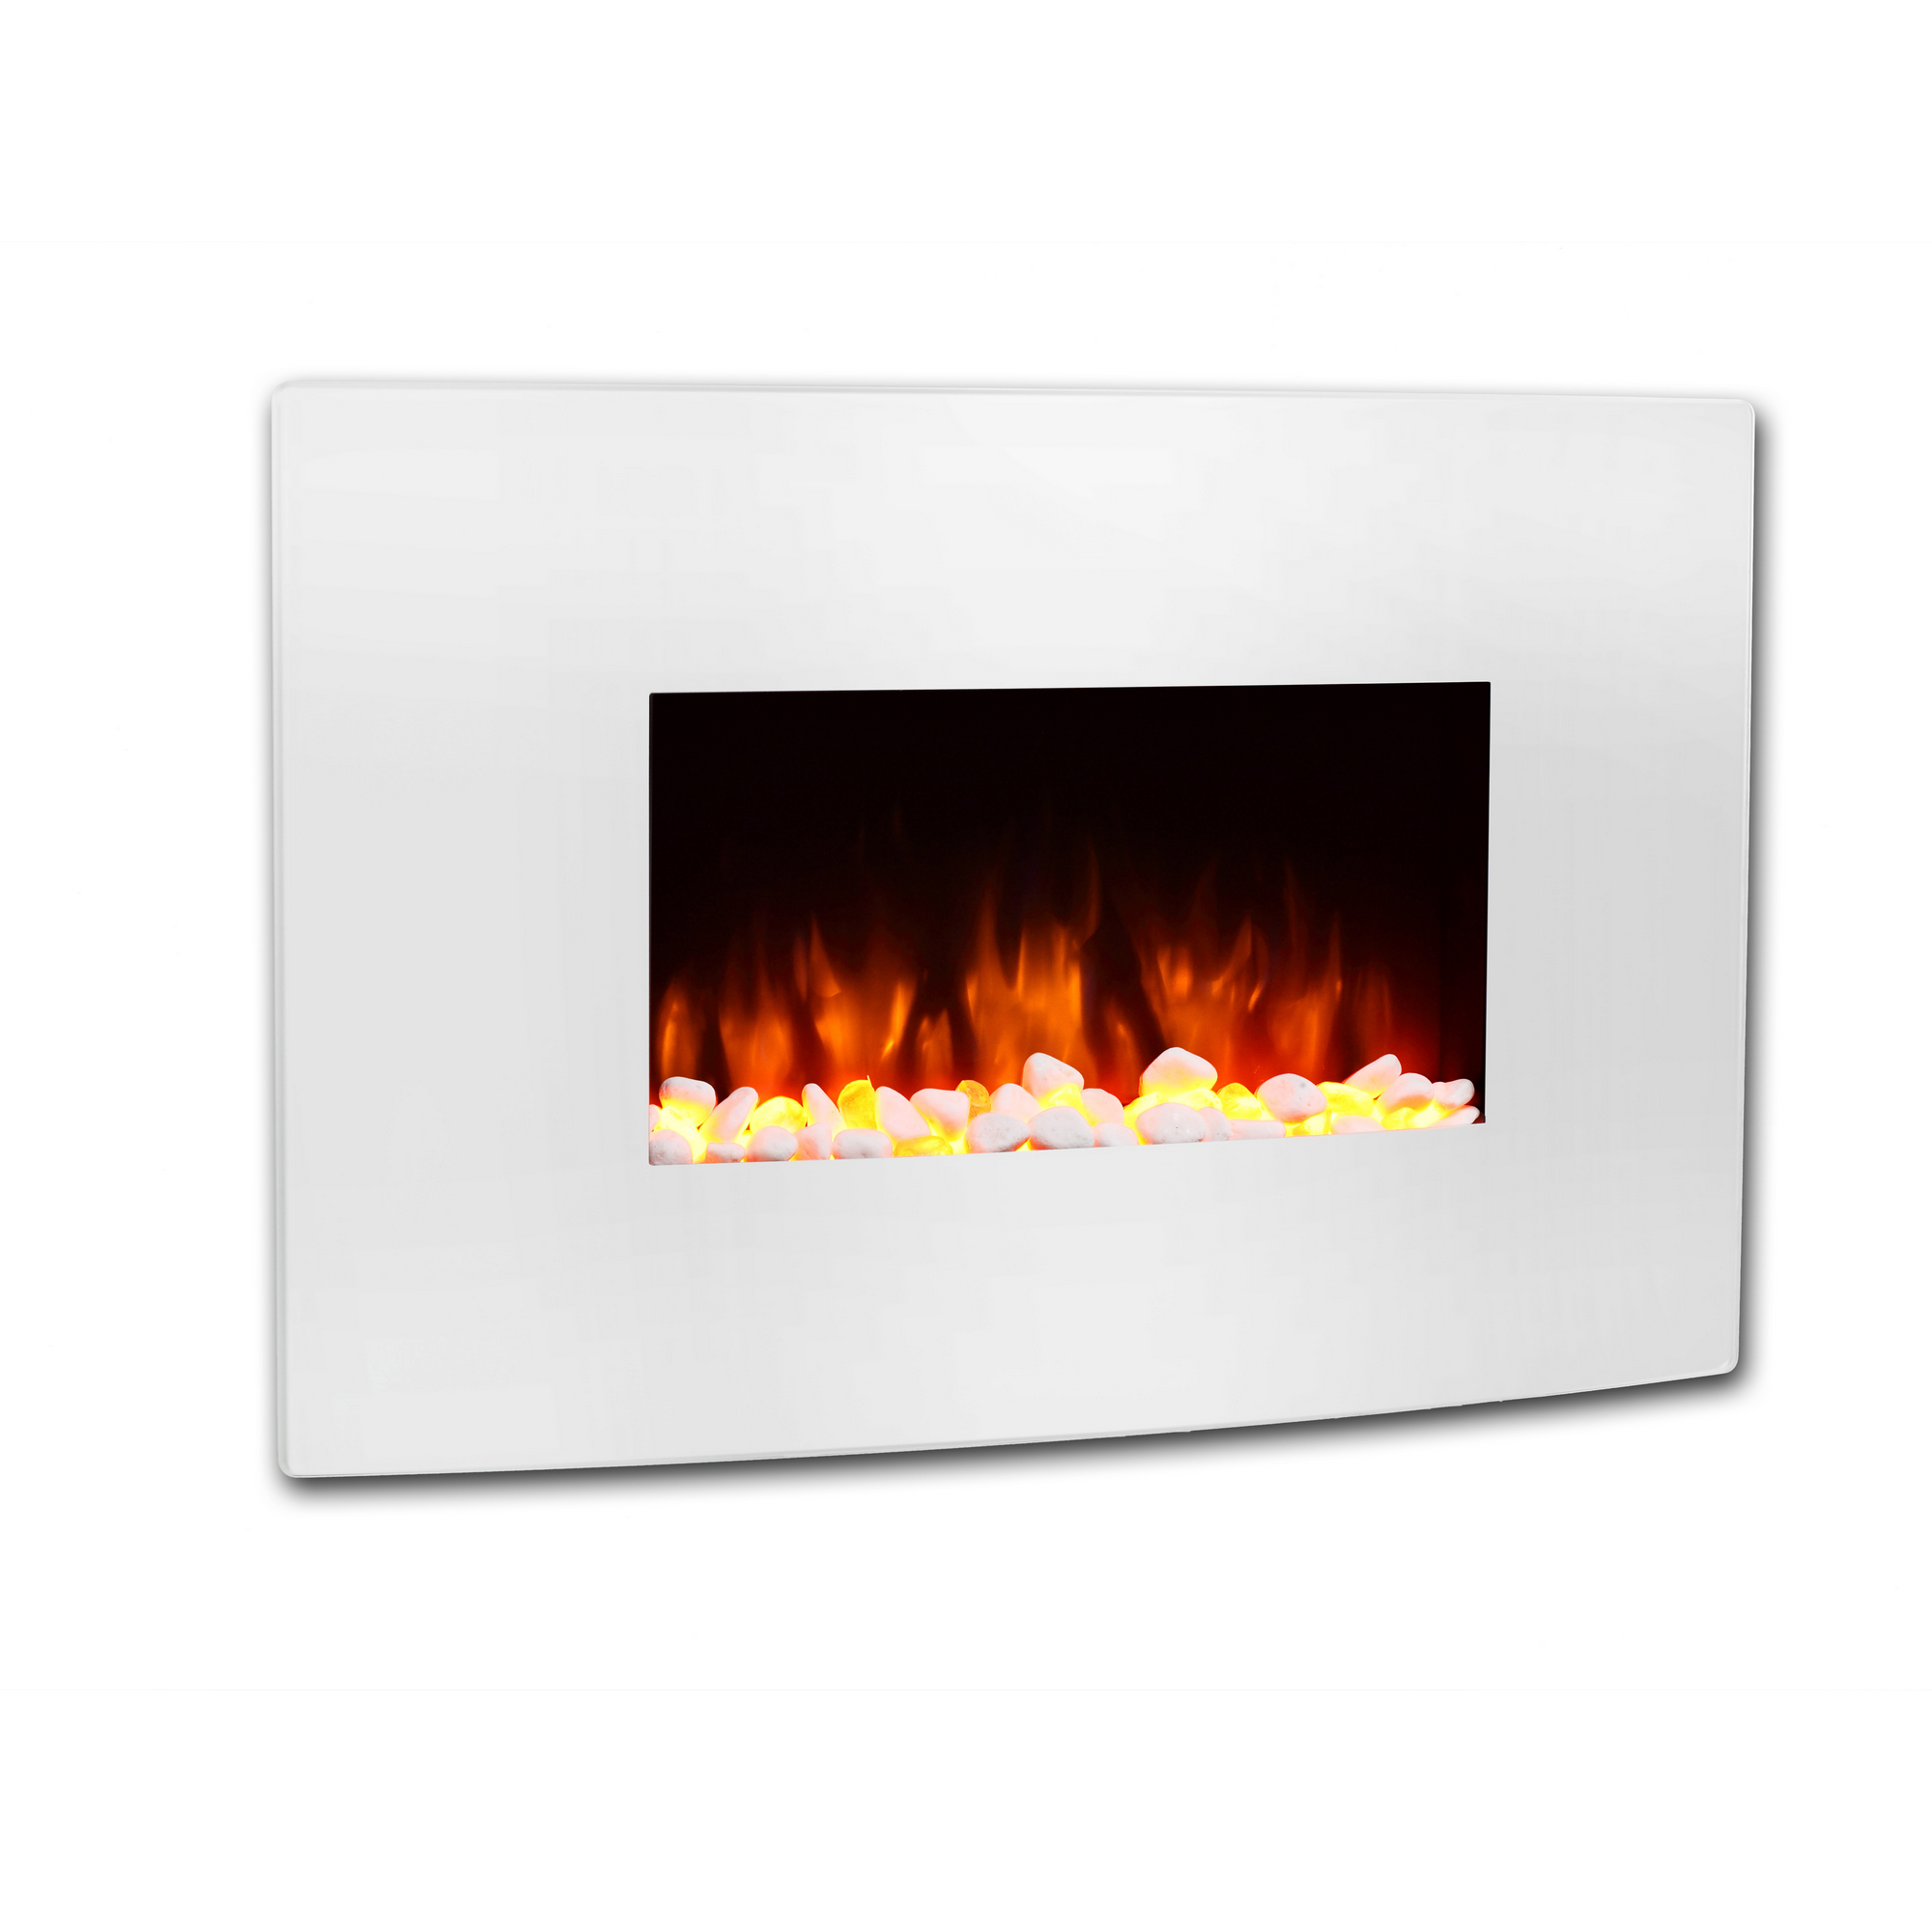 Elektro-Wandkamin 'Enjo' weiß 2000 W, 3D-Flammeneffekt Fernbedienung 58 x 91 x 18 cm + product picture